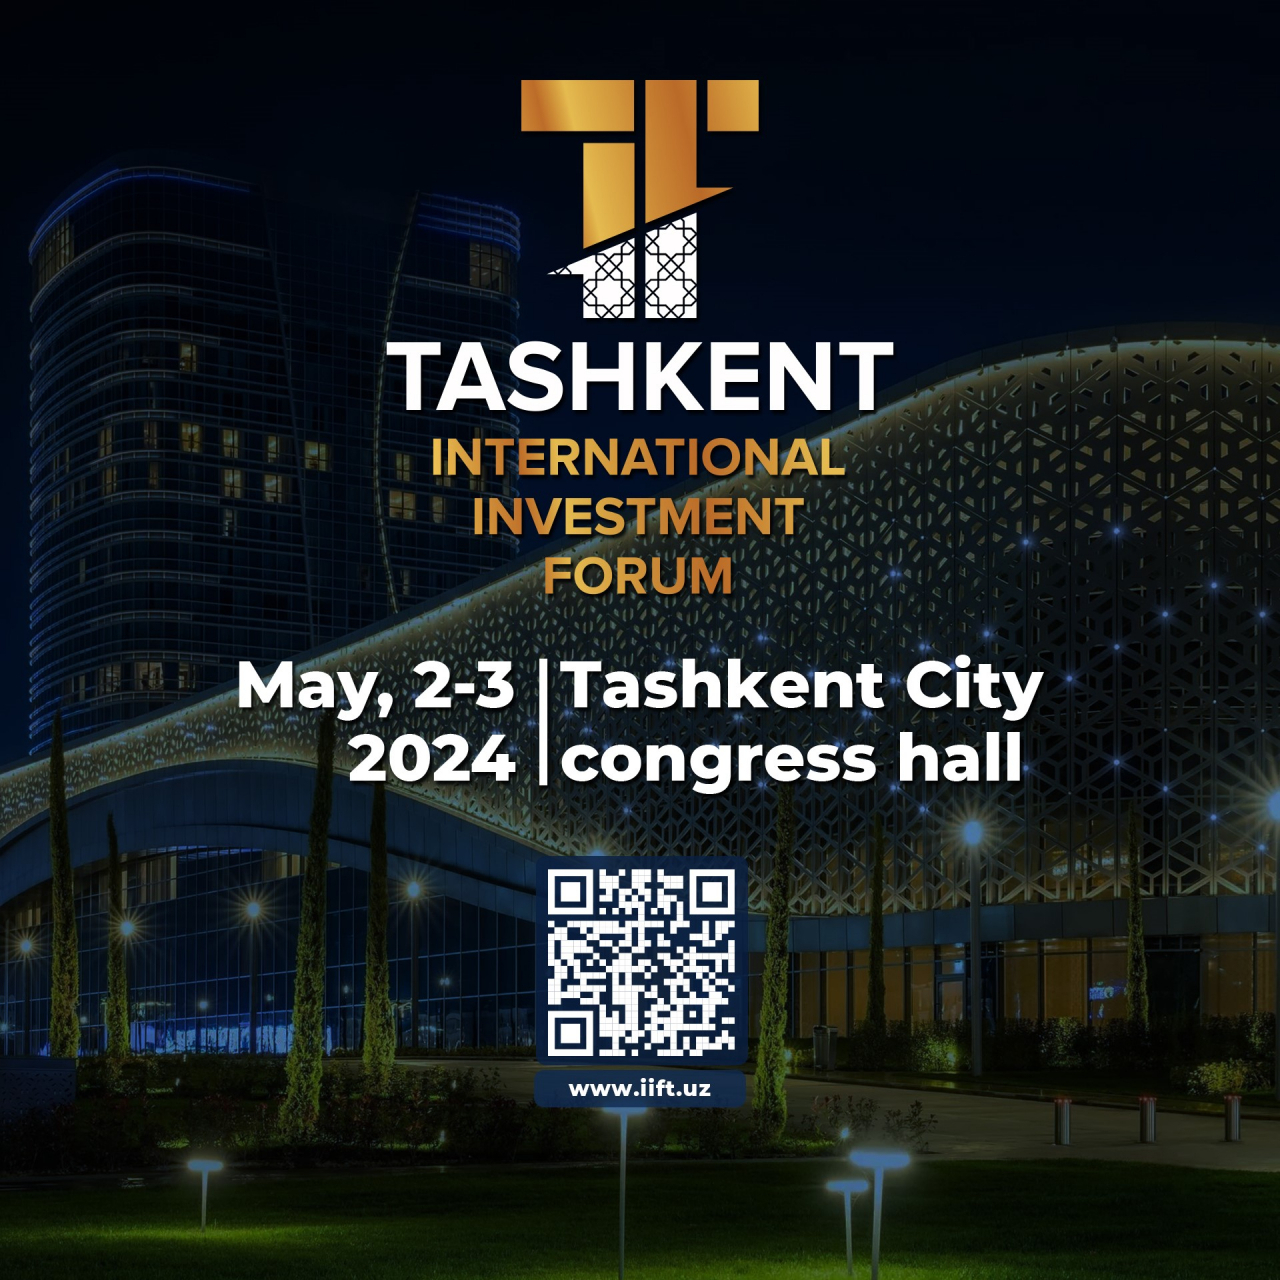 Poster of Tashkent International Investment Forum. (Embassy of Uzbekistan in Seoul)